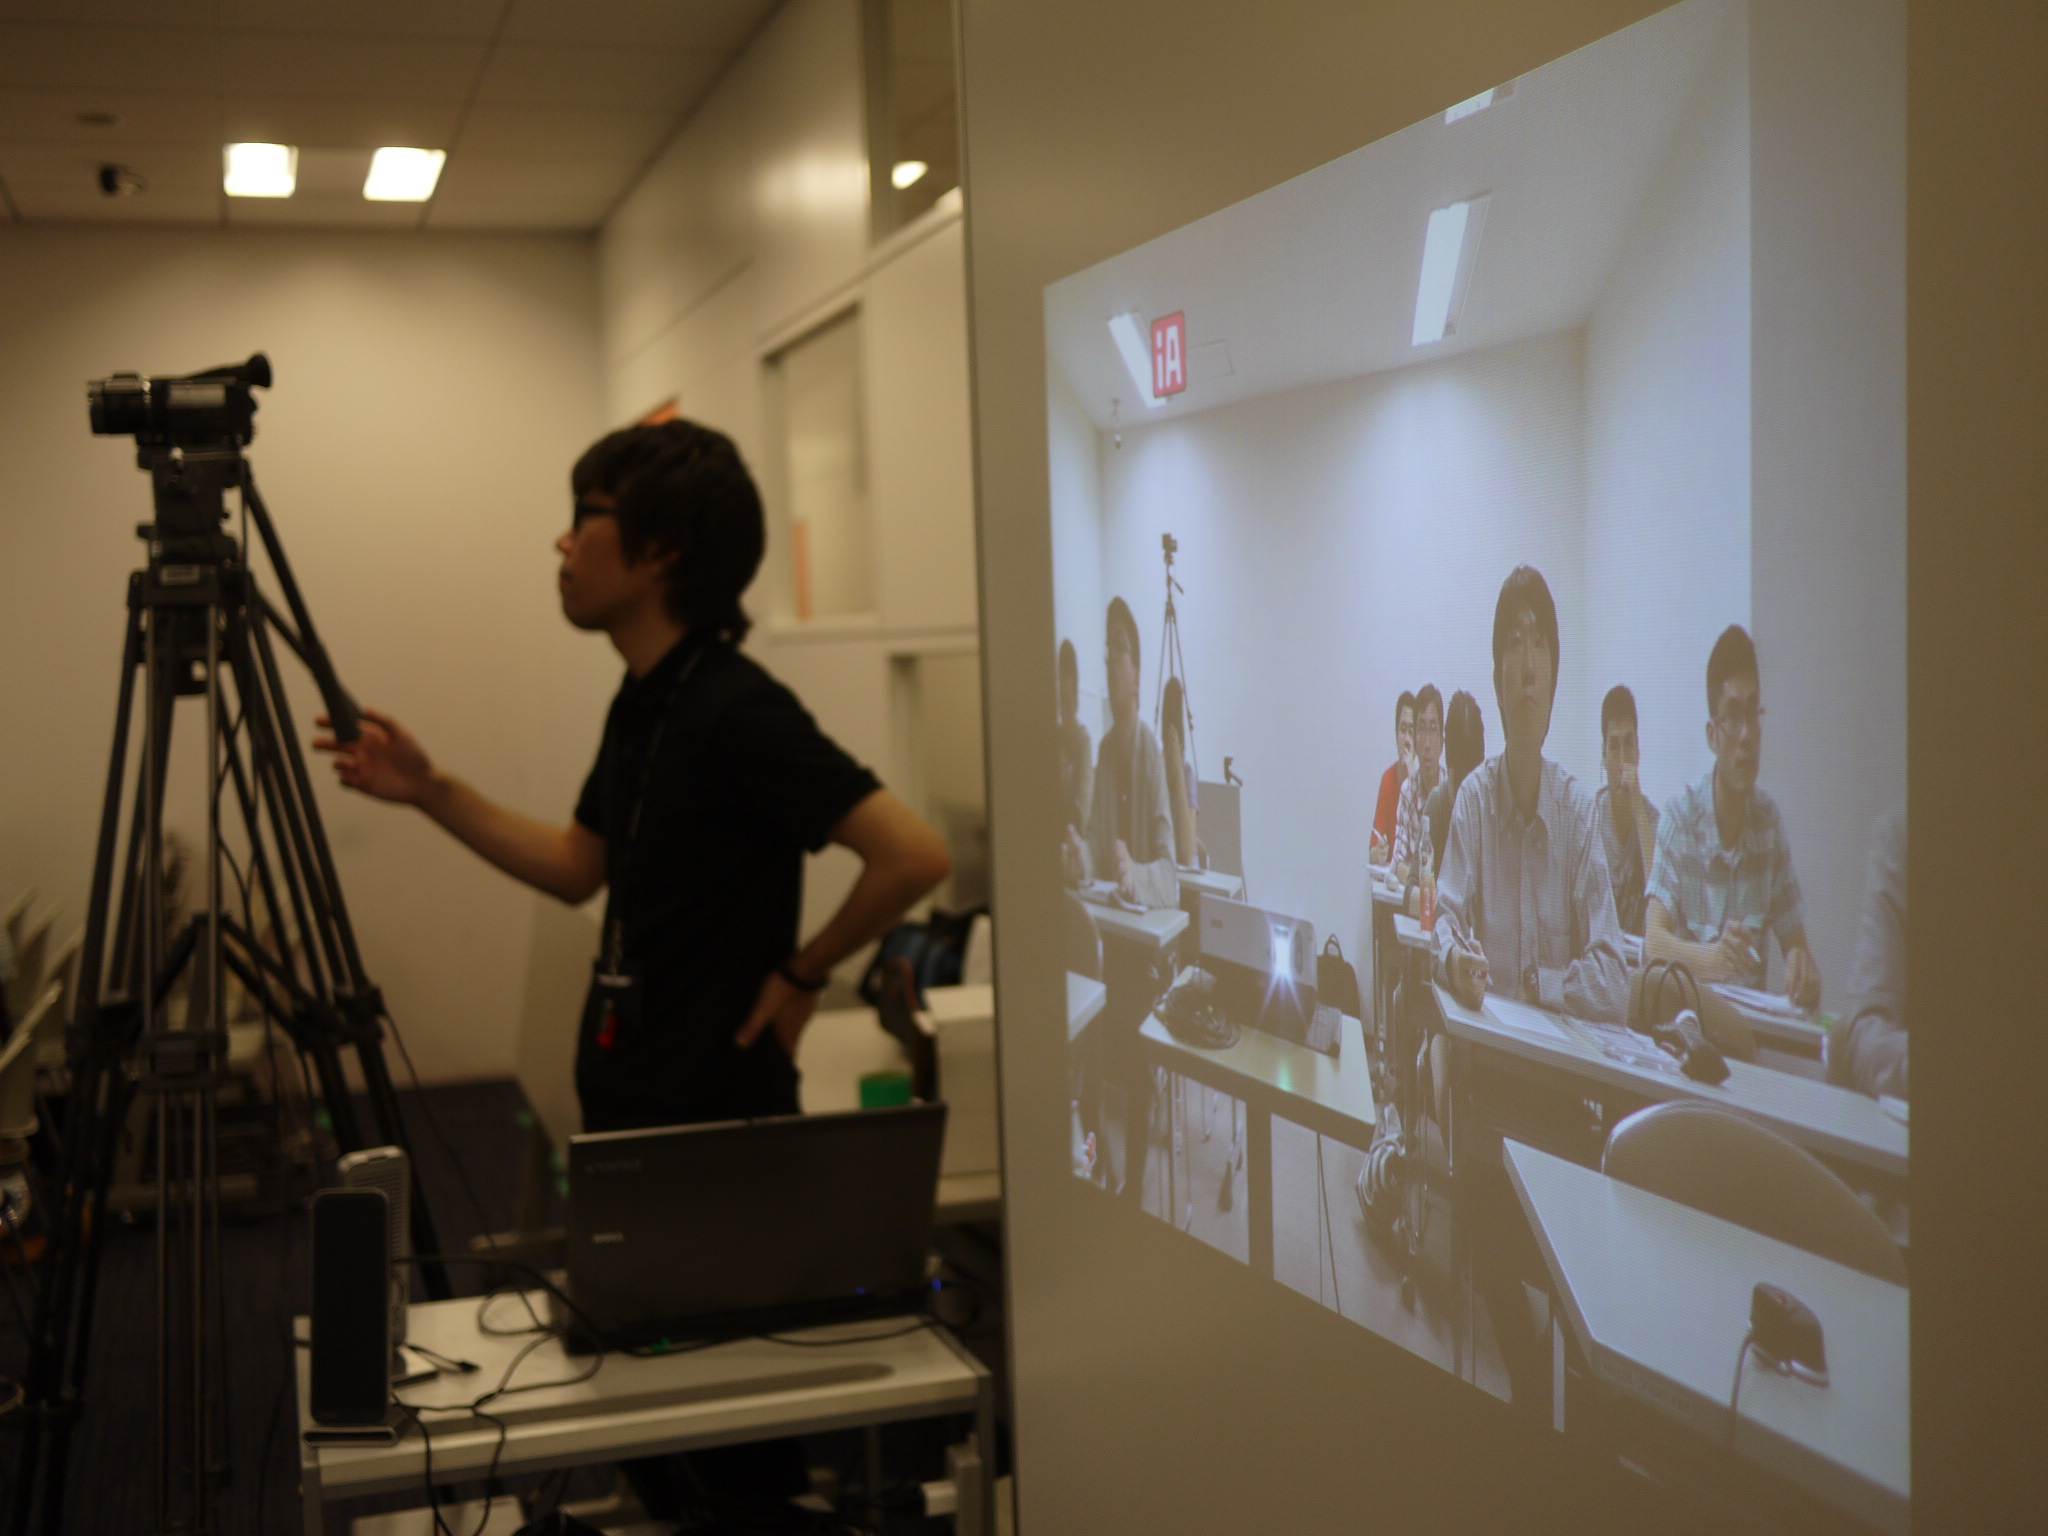 大学院の授業、杉山学長による「デジタルコミュニケーション原論」。大阪のサテライトキャンパス在籍の院生のために、リアルタイムでの動画配信を行っている。東京側には、大阪キャンパスの院生たちの様子も映し出される